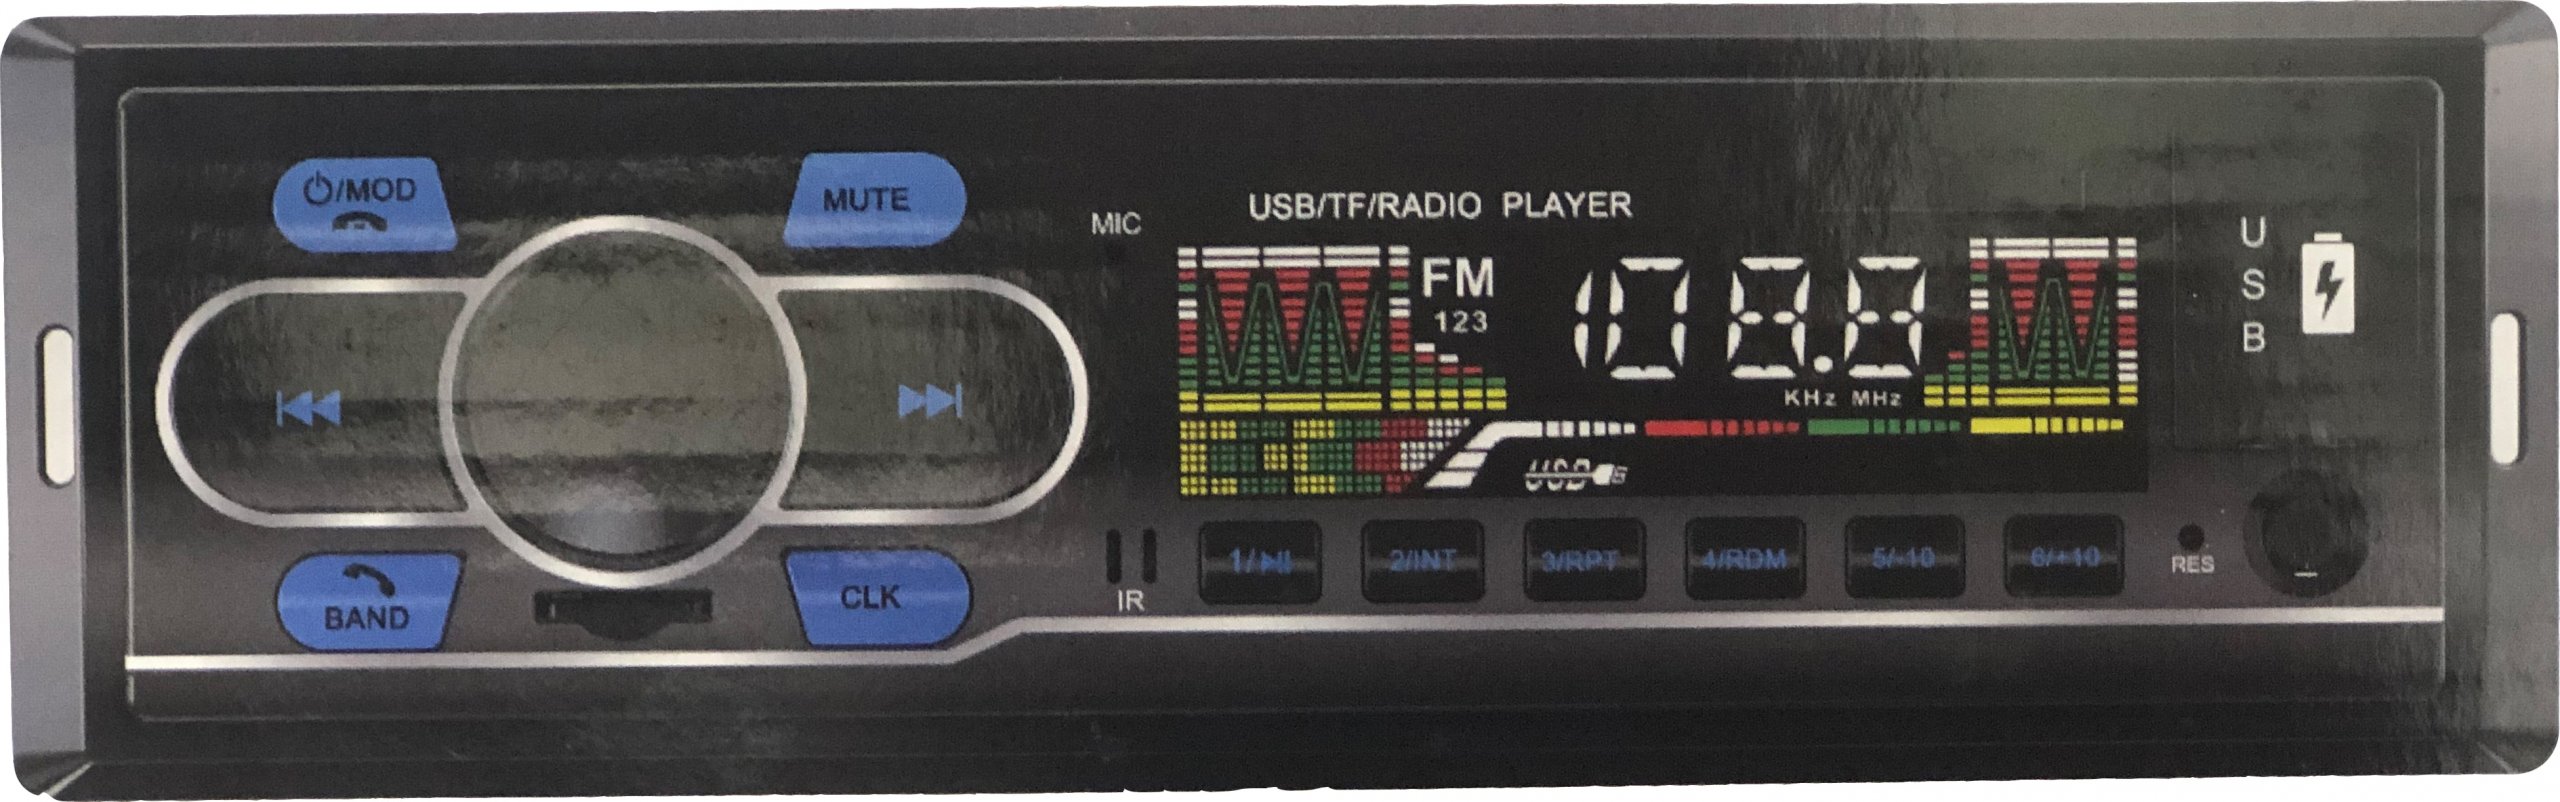 رادیو پخش دو فلاش بلوتوث دار مدل SX-8800